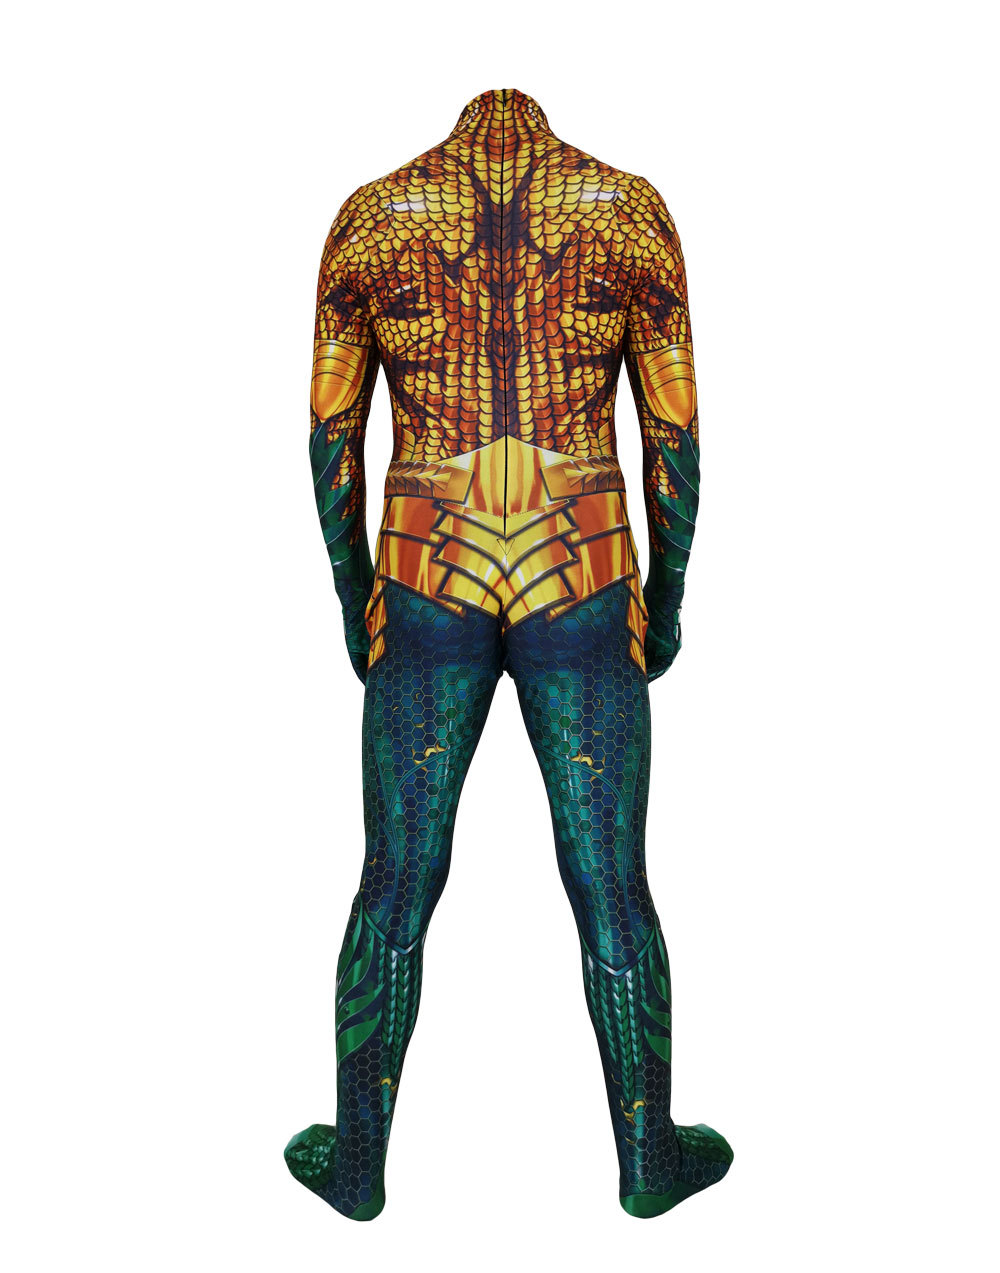 Erwachsene Kinder Arthur Cosplay Kostüme Zentai Bodysuit Anzug Mann Jungen Mann Superhelden Halloween Jumpsuit